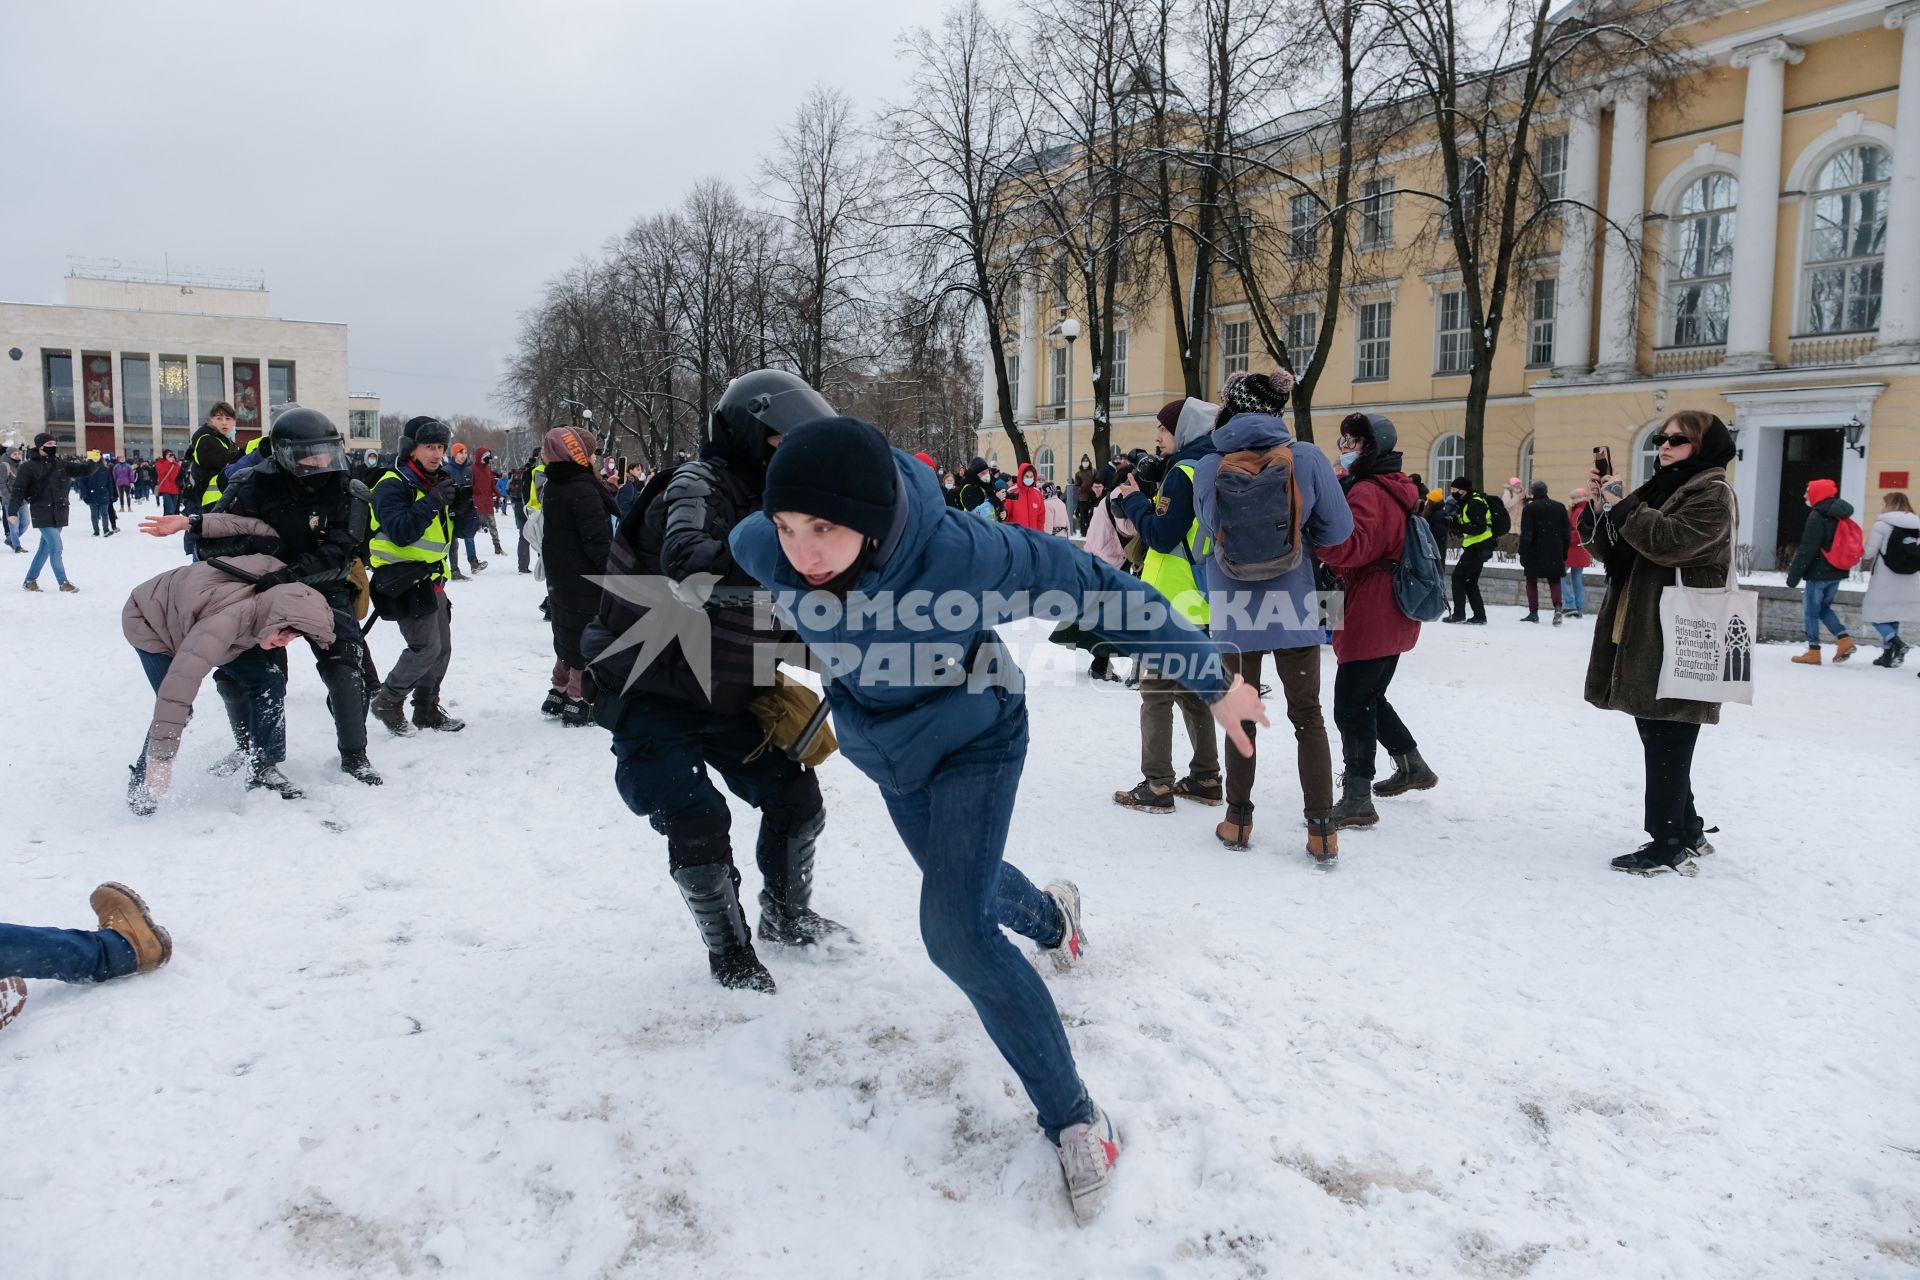 Санкт-Петербург. Сотрудники правоохранительных органов задерживают участника несанкционированной акции в поддержку оппозиционера Алексея Навального.